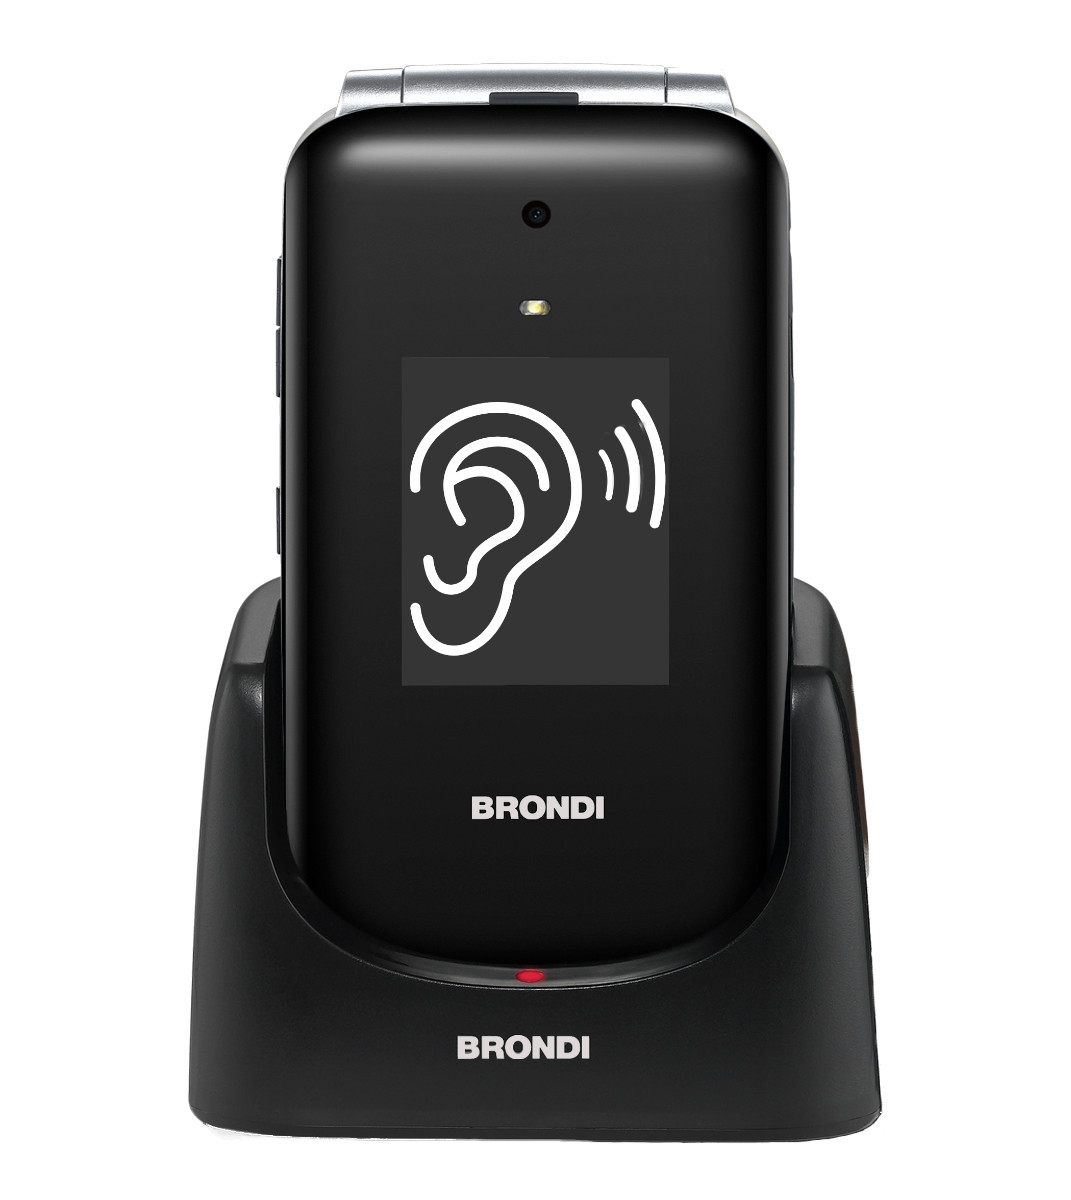 BRONDI Amico Supervoice 7,11 cm (2.8) Nero Telefono per anziani, Cellulari e Senior phone in Offerta su Stay On